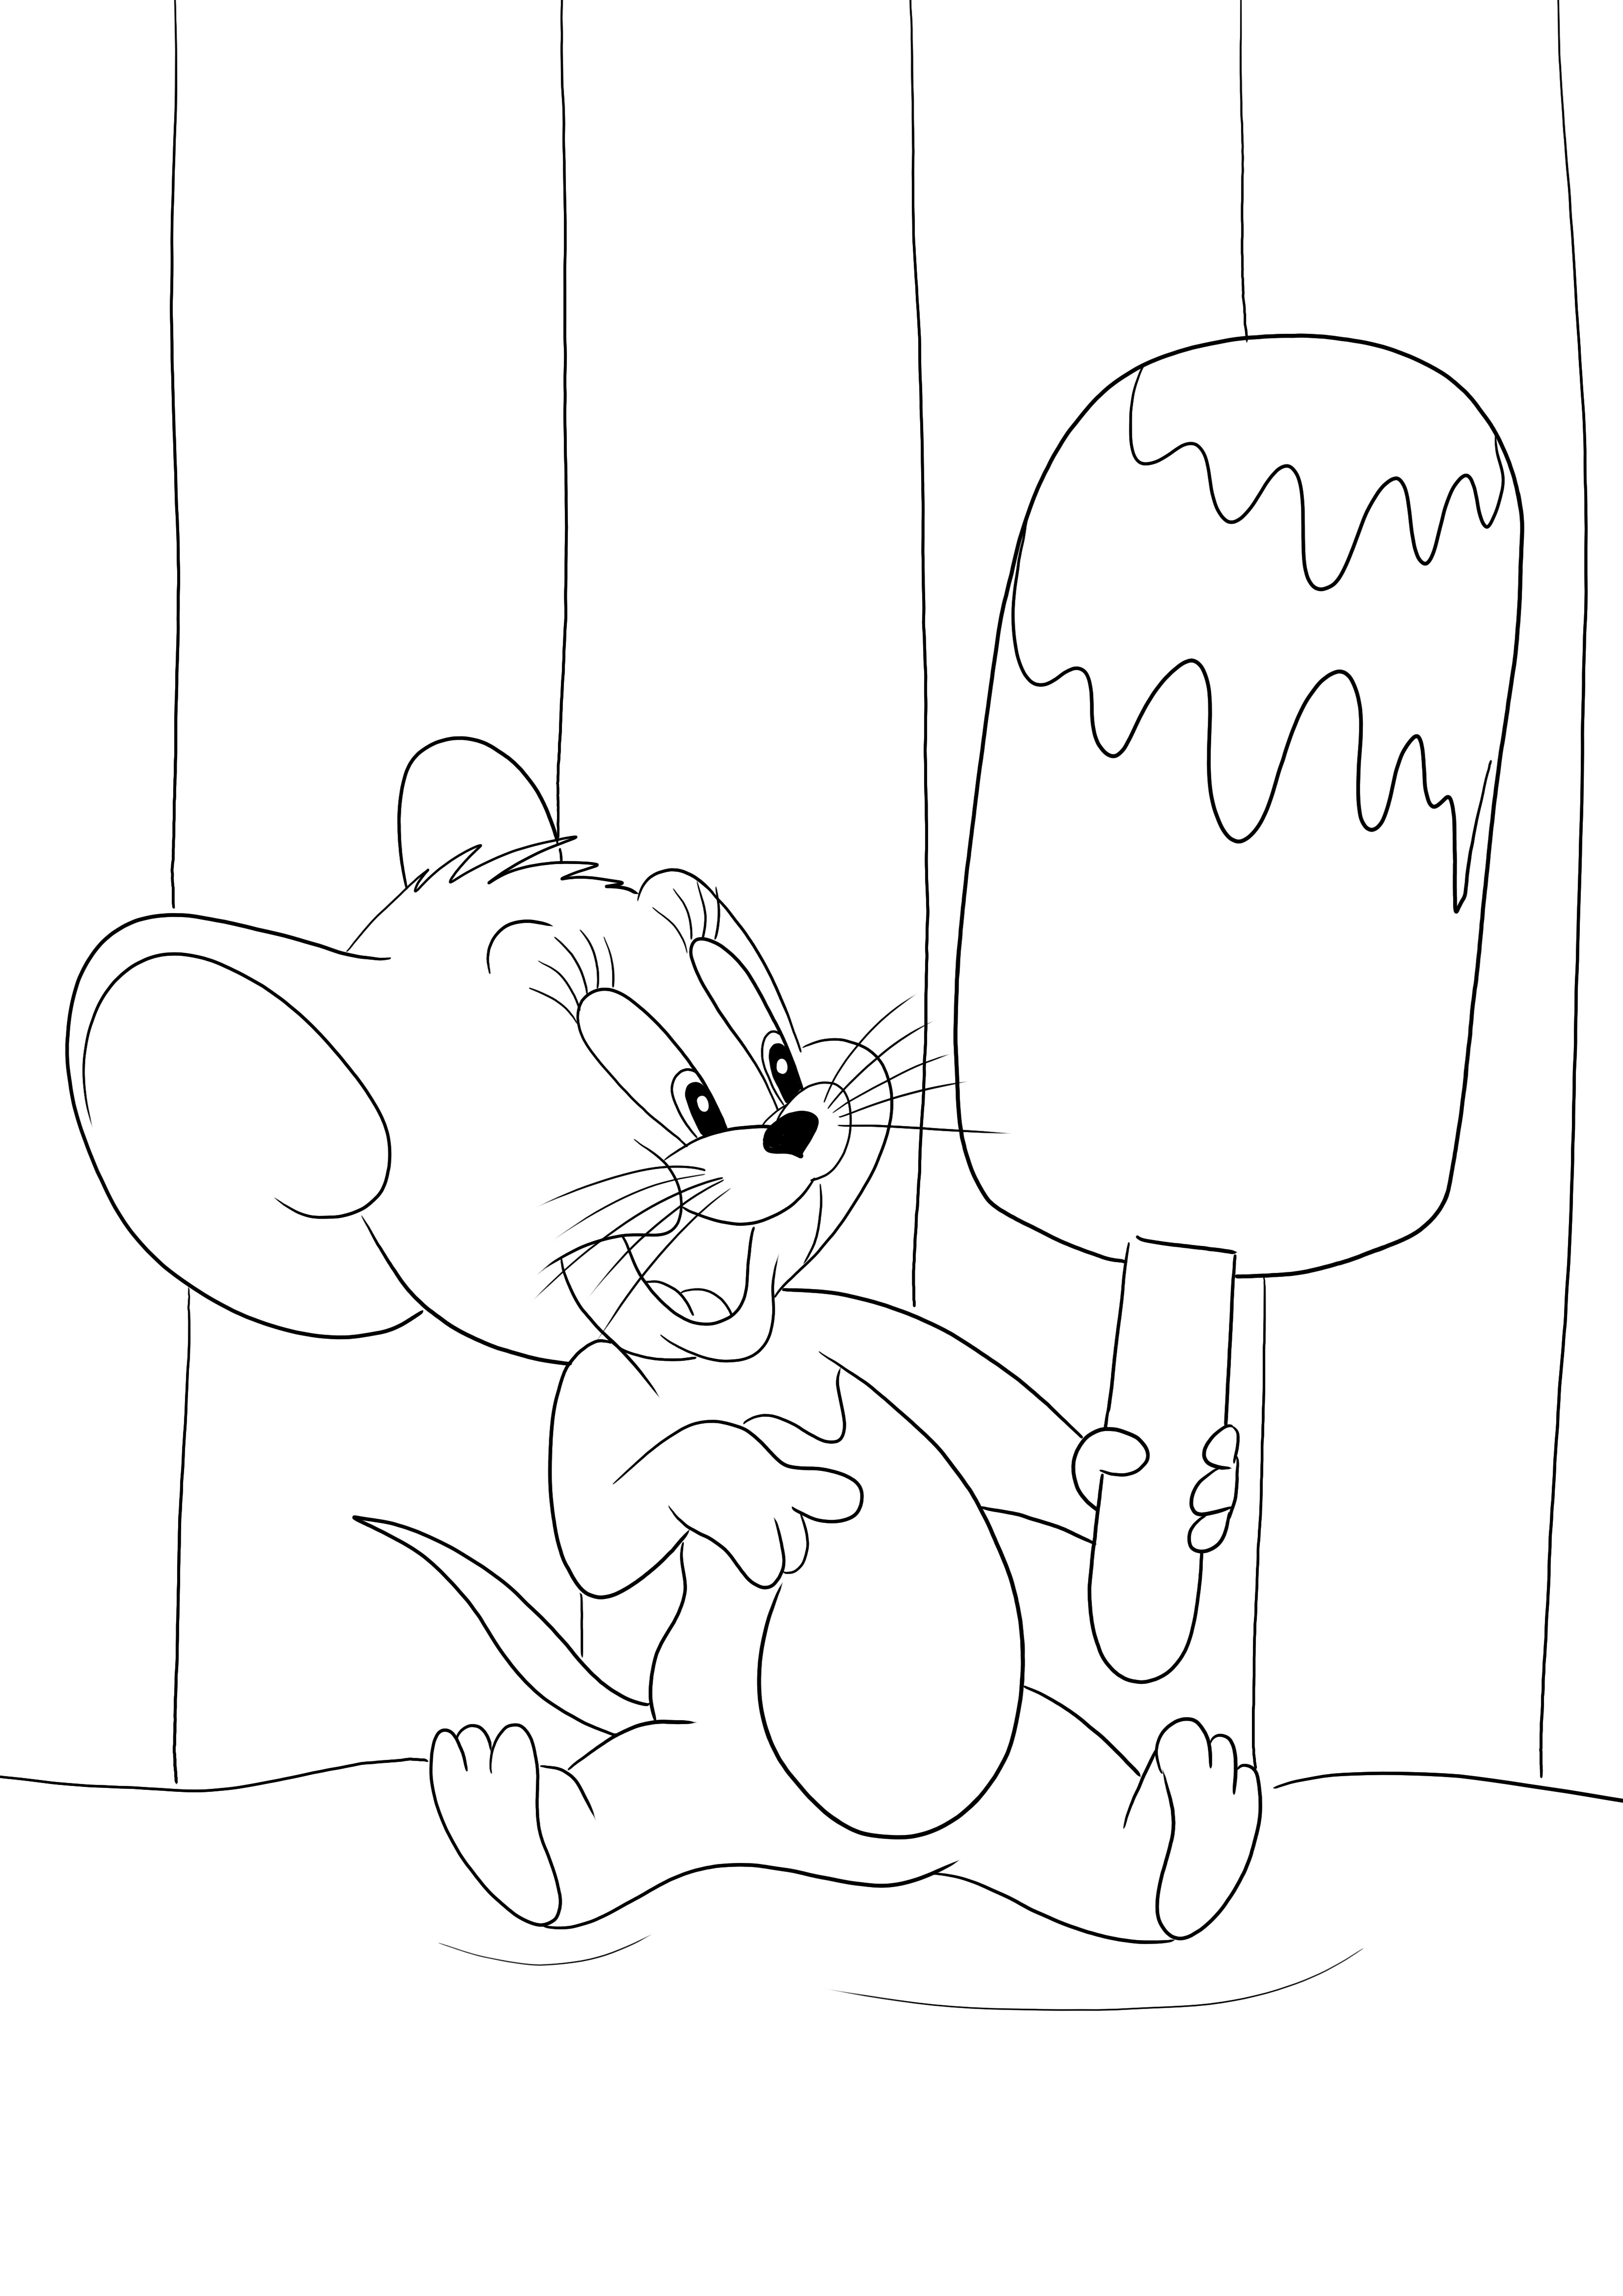 Jerry és nagy fagylaltja készen áll arra, hogy a gyerekek ingyen kinyomtassák és kiszínezzék